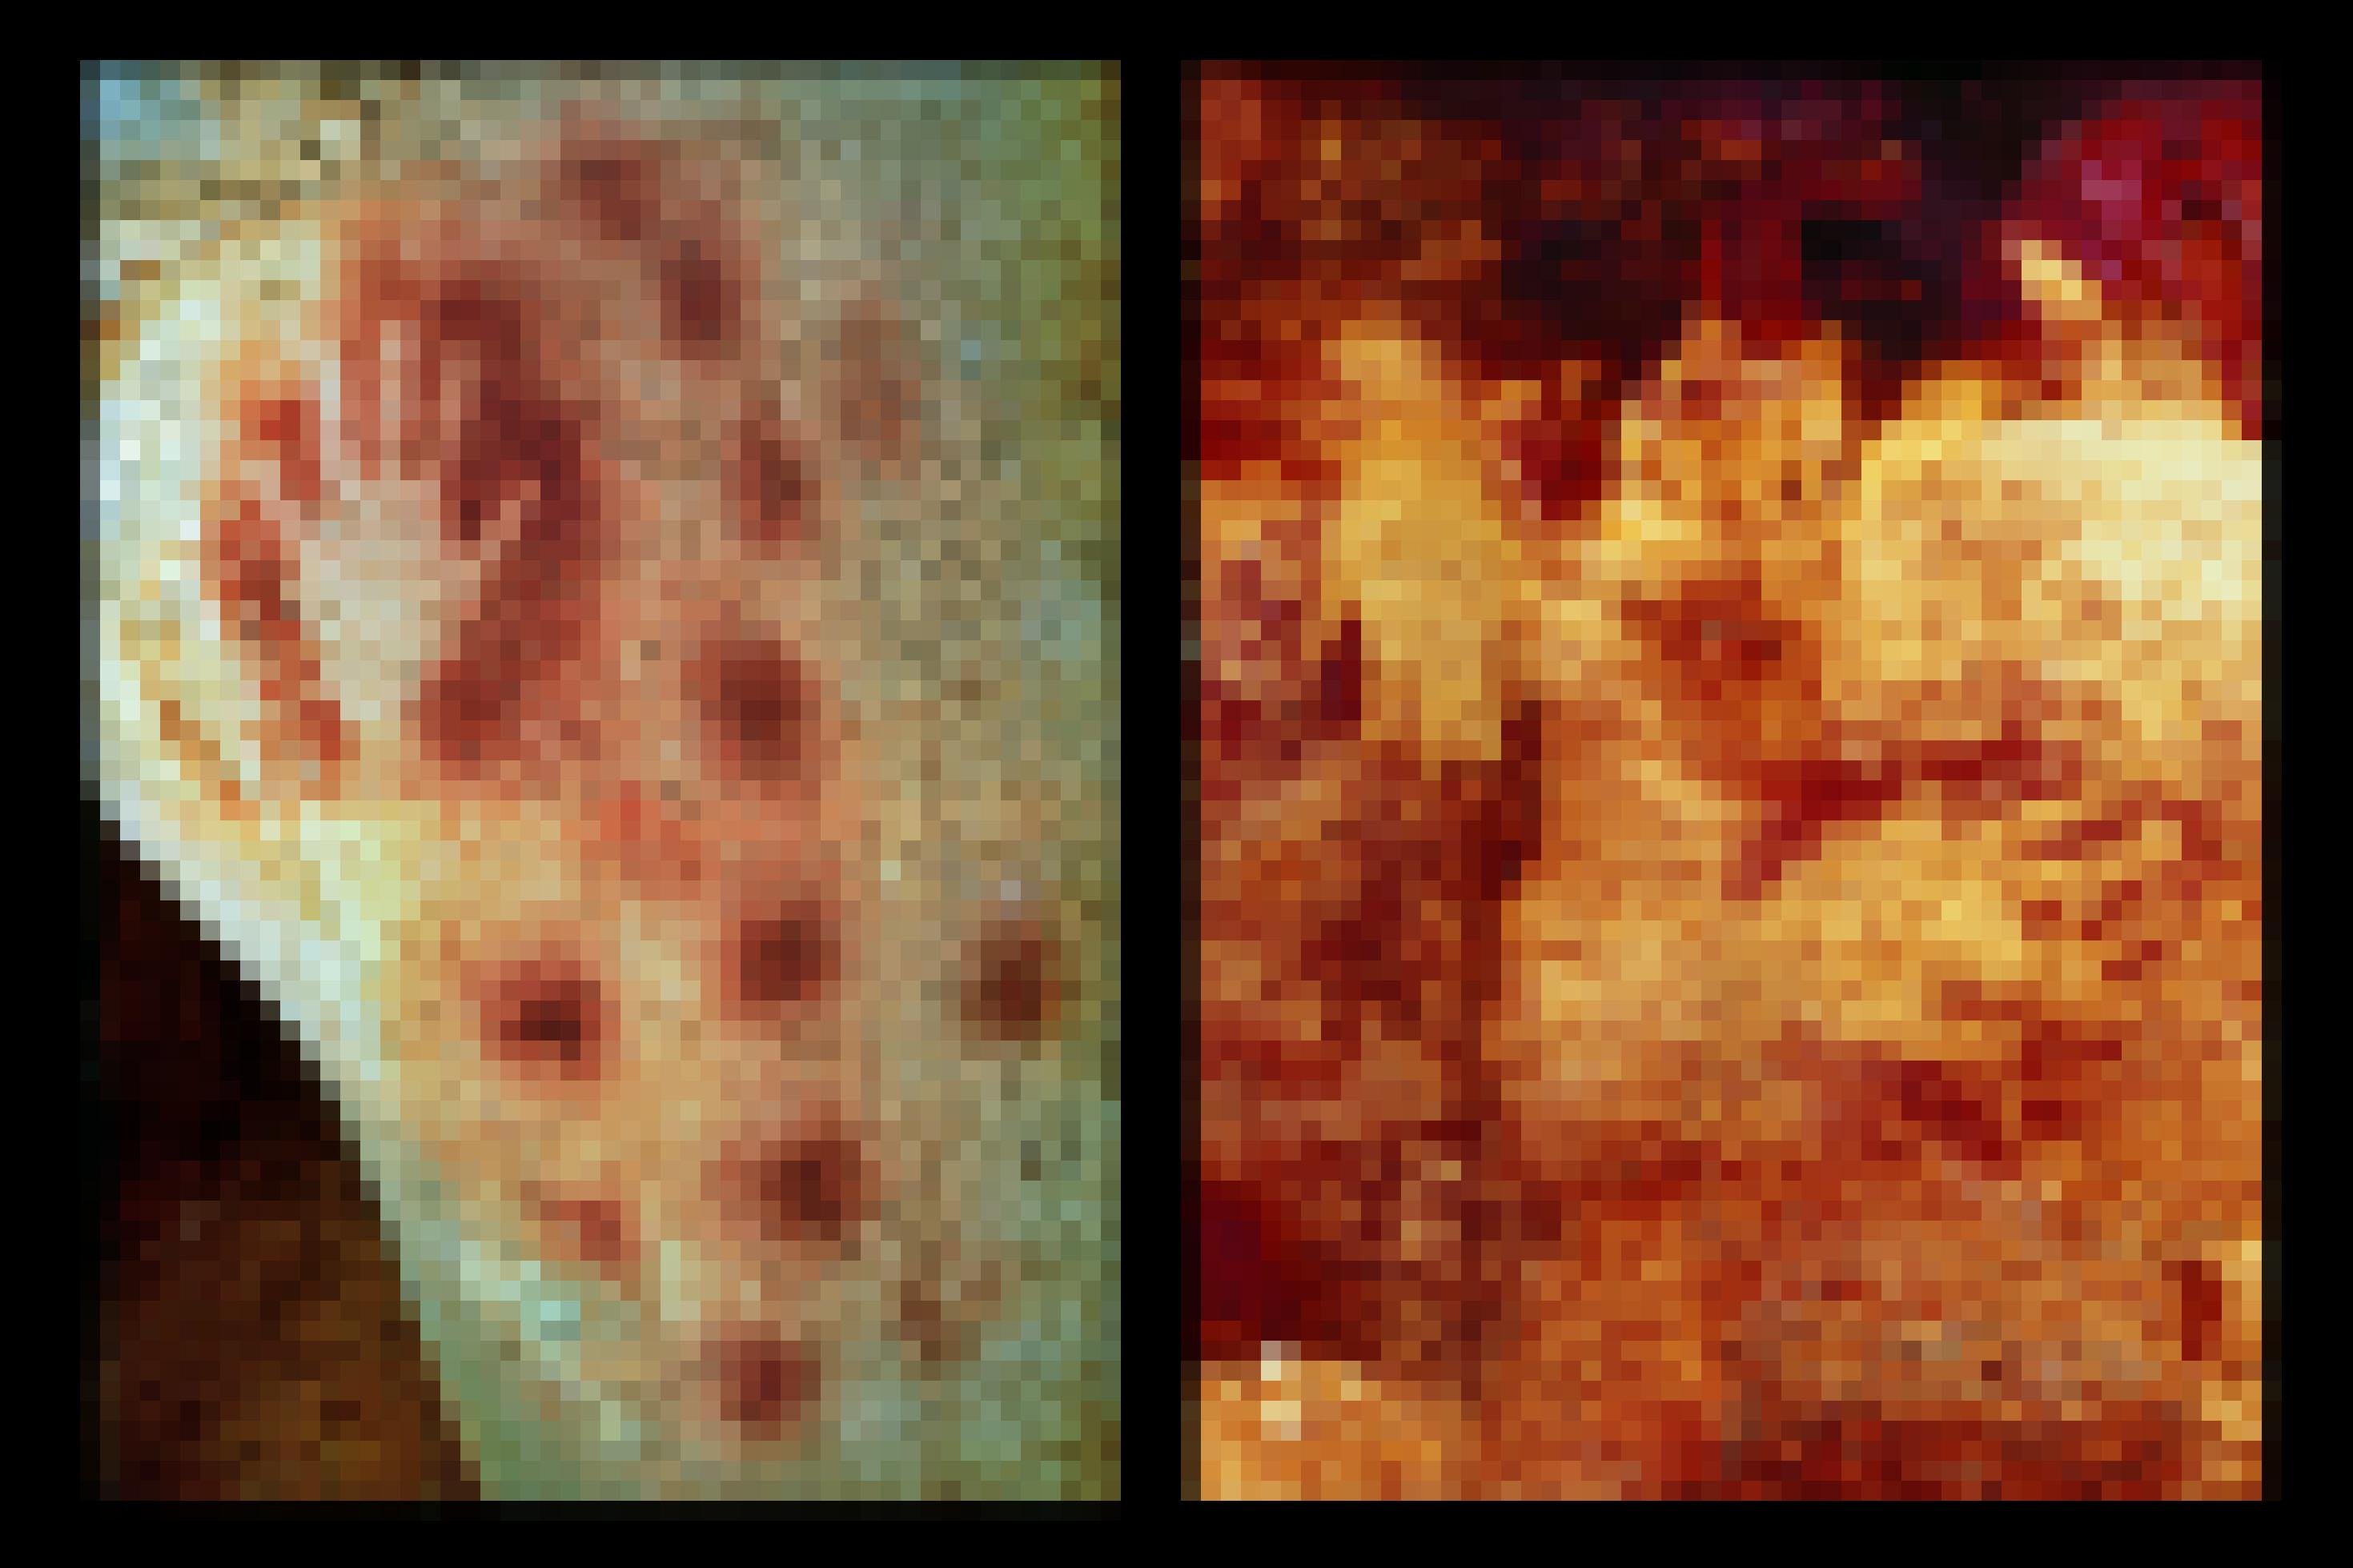 Links ist das Foto eines grün-bläulich-gelben Felsens zu sehen, auf dem sich links oben der Umriss einer menschlichen Hand abzeichnet, der von dunkelrotem Farbstoff umgeben ist. Rechts neben der Hand und unten finden sich zudem weitere dunkelrote Farbpunkte in regelmäßigen Abständen. Das rechte Bild zeigt eine Höhlenwand mit einem Gemisch aus gelblichen und dunkelroten Farbtönen, auf dem sich – nicht ganz einfach erkennbar – drei hellen Handflächen abzeichnen, die von dunkelroten Pigmenten umgeben sind.